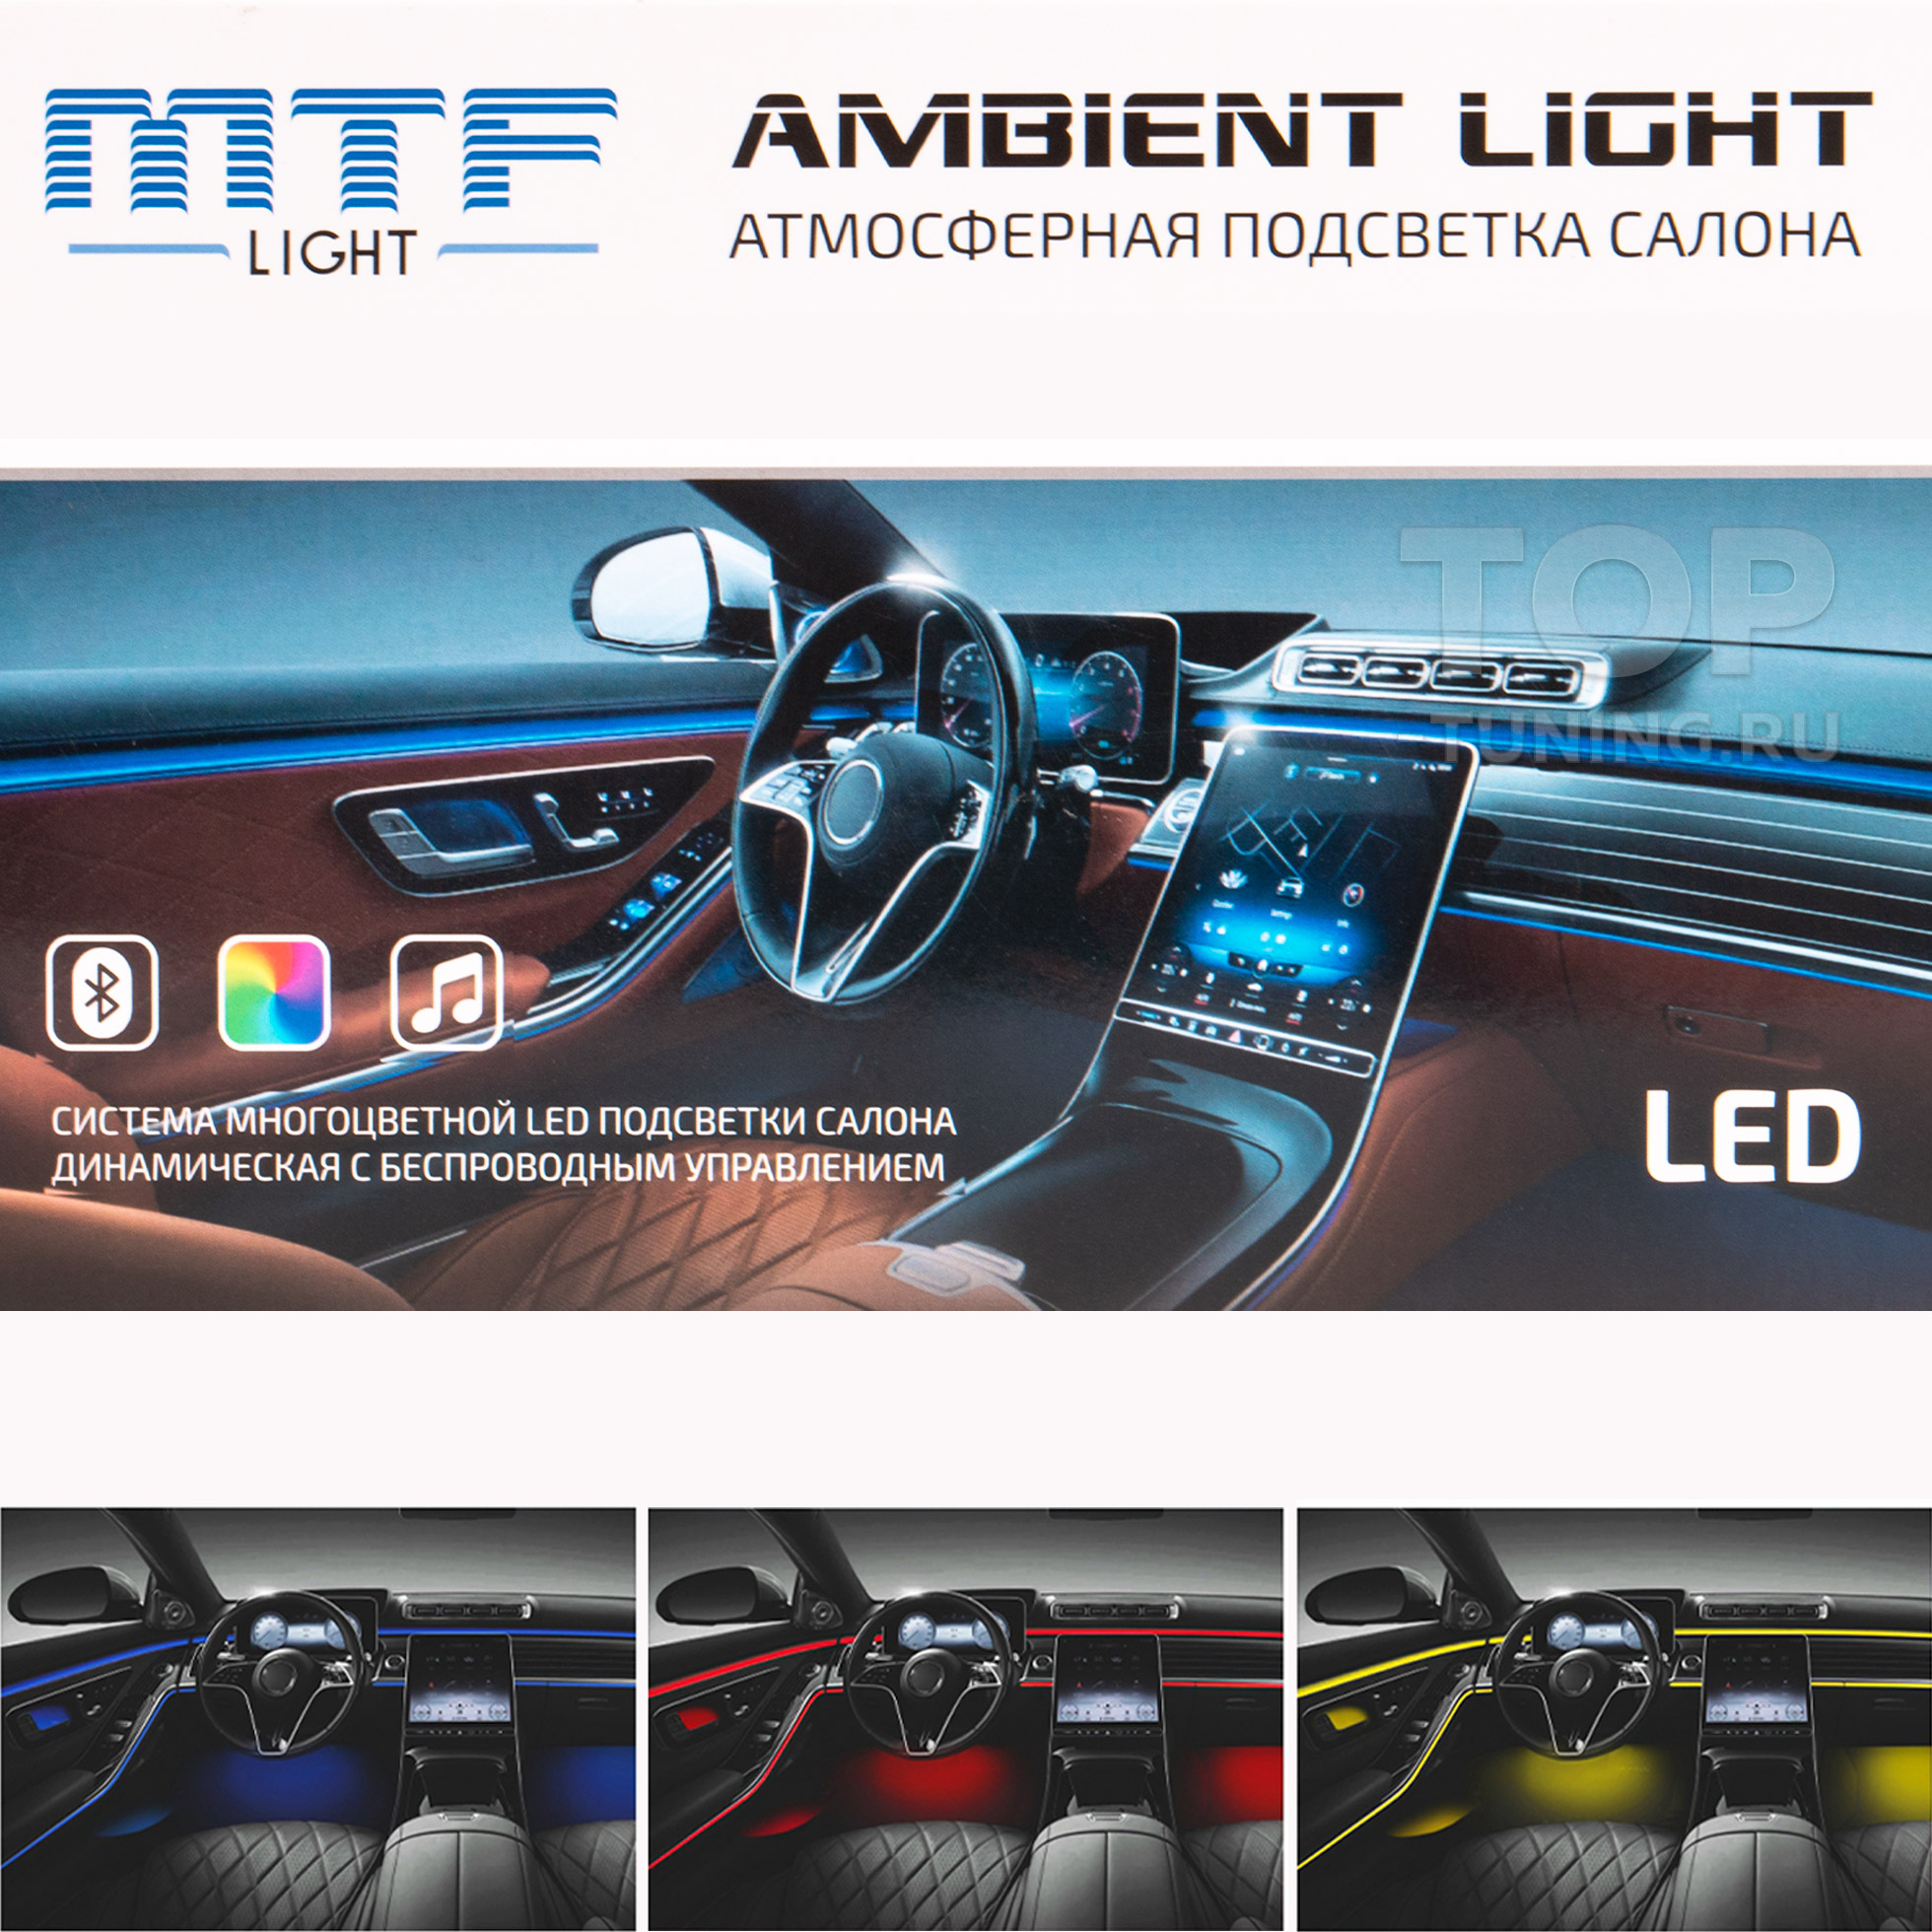 LED лампы для авто